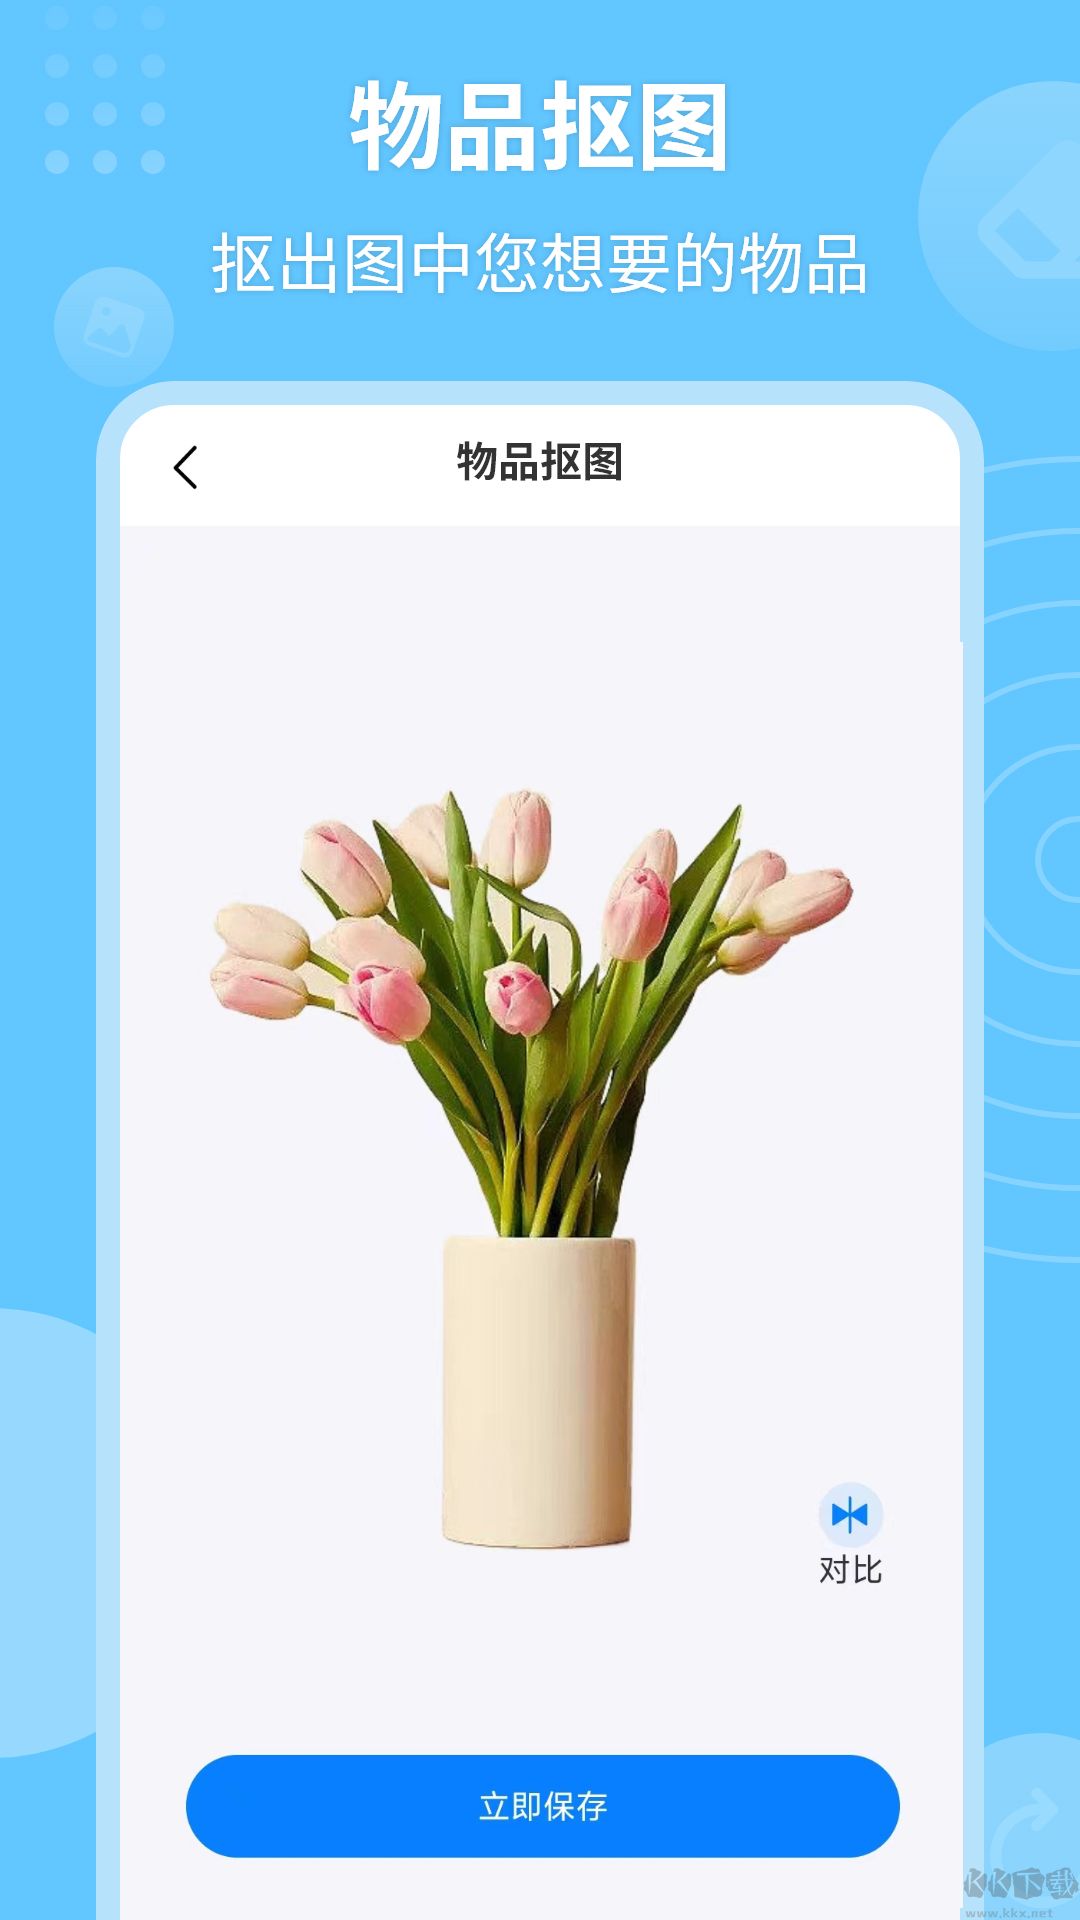 P图抠图秀app官方版